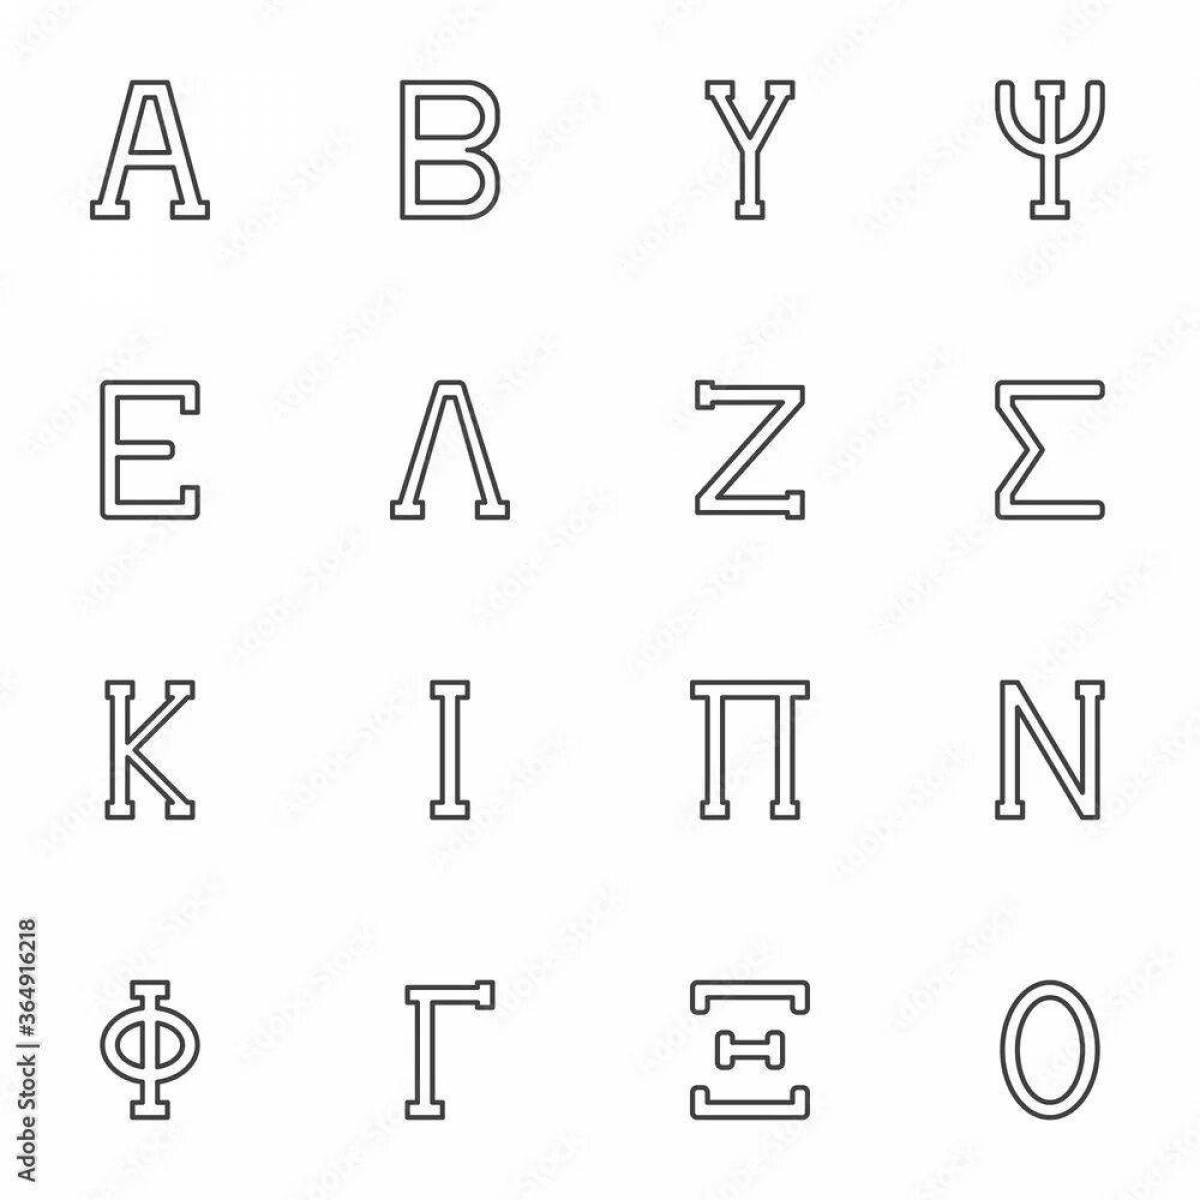 Привлекательный дизайн раскраски греческим алфавитом